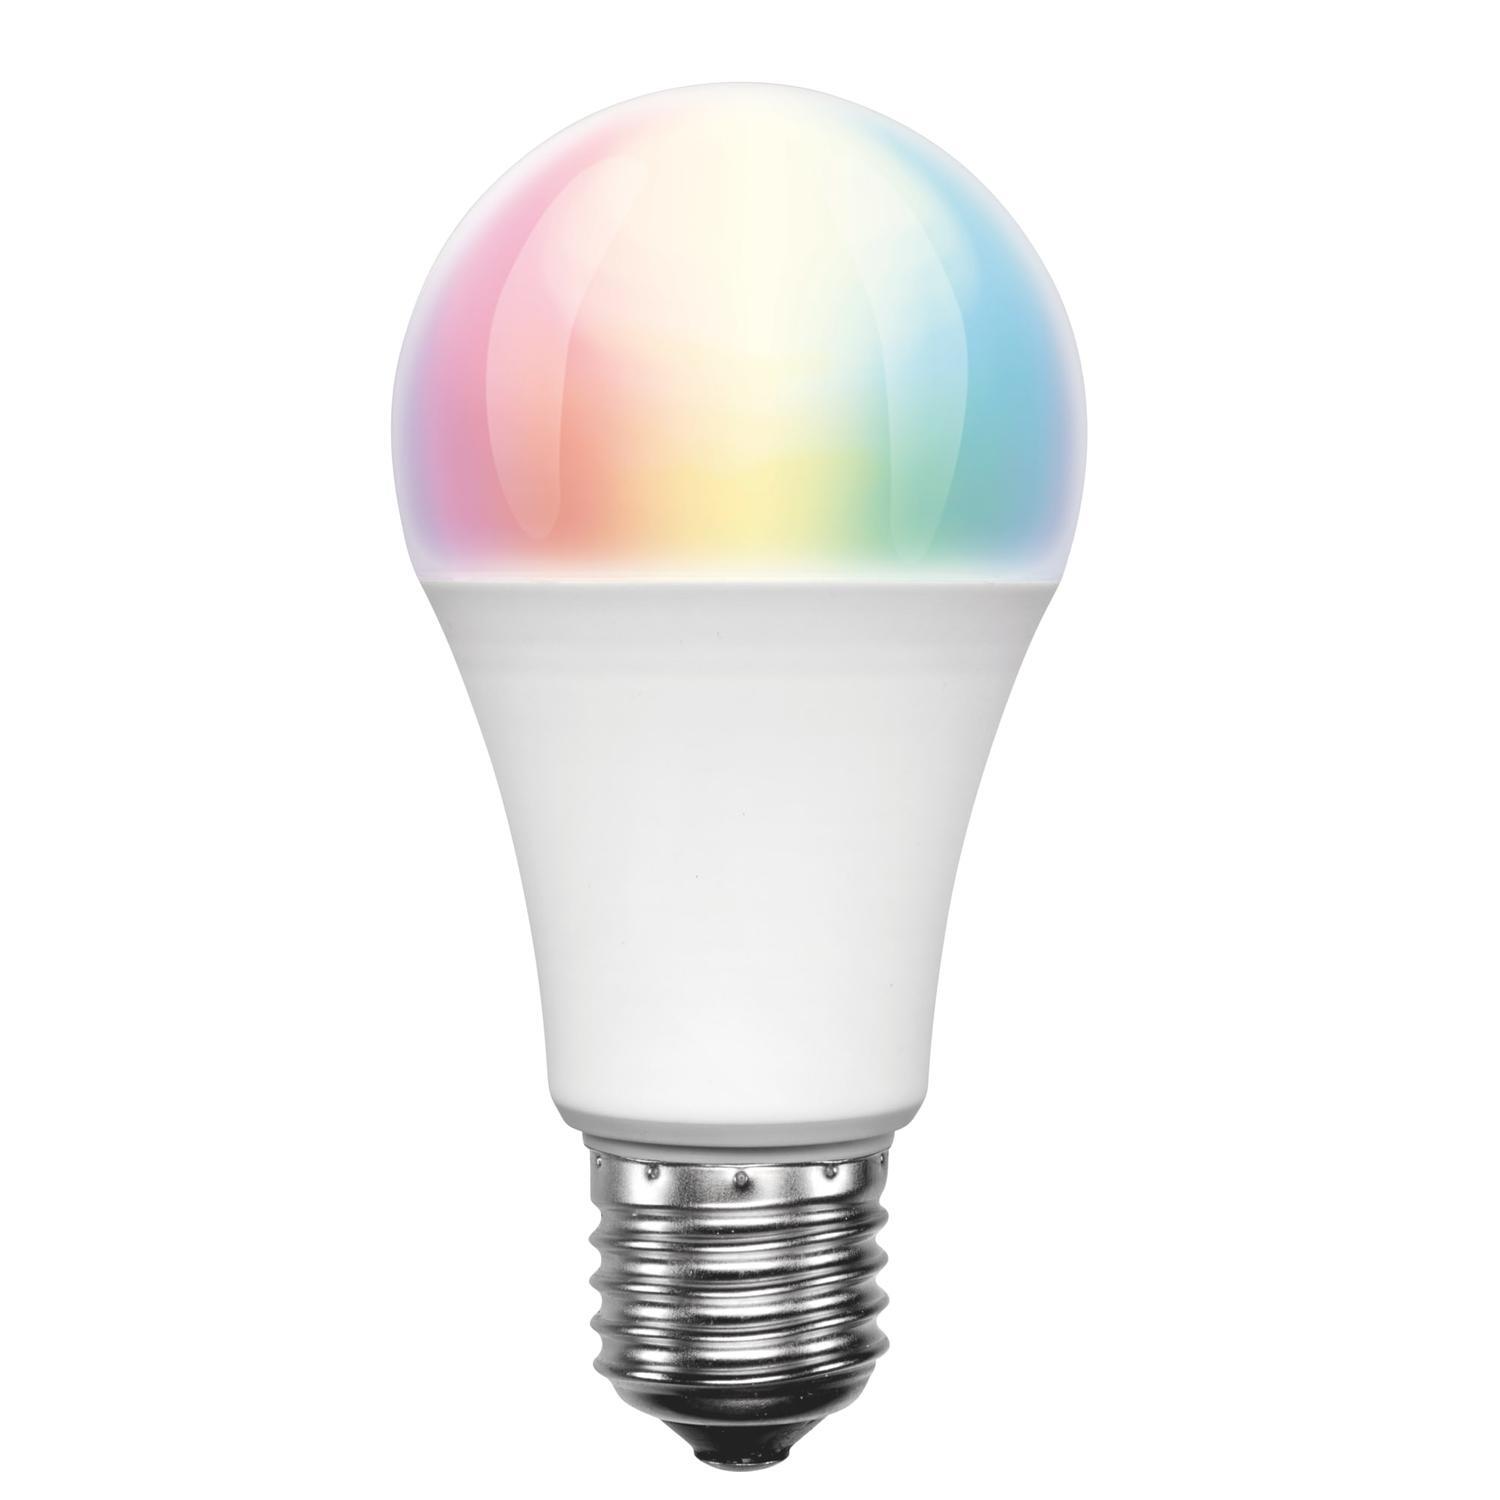 TP LINK SMART WIFI LED BULB LIGHT - WHITE -NEW